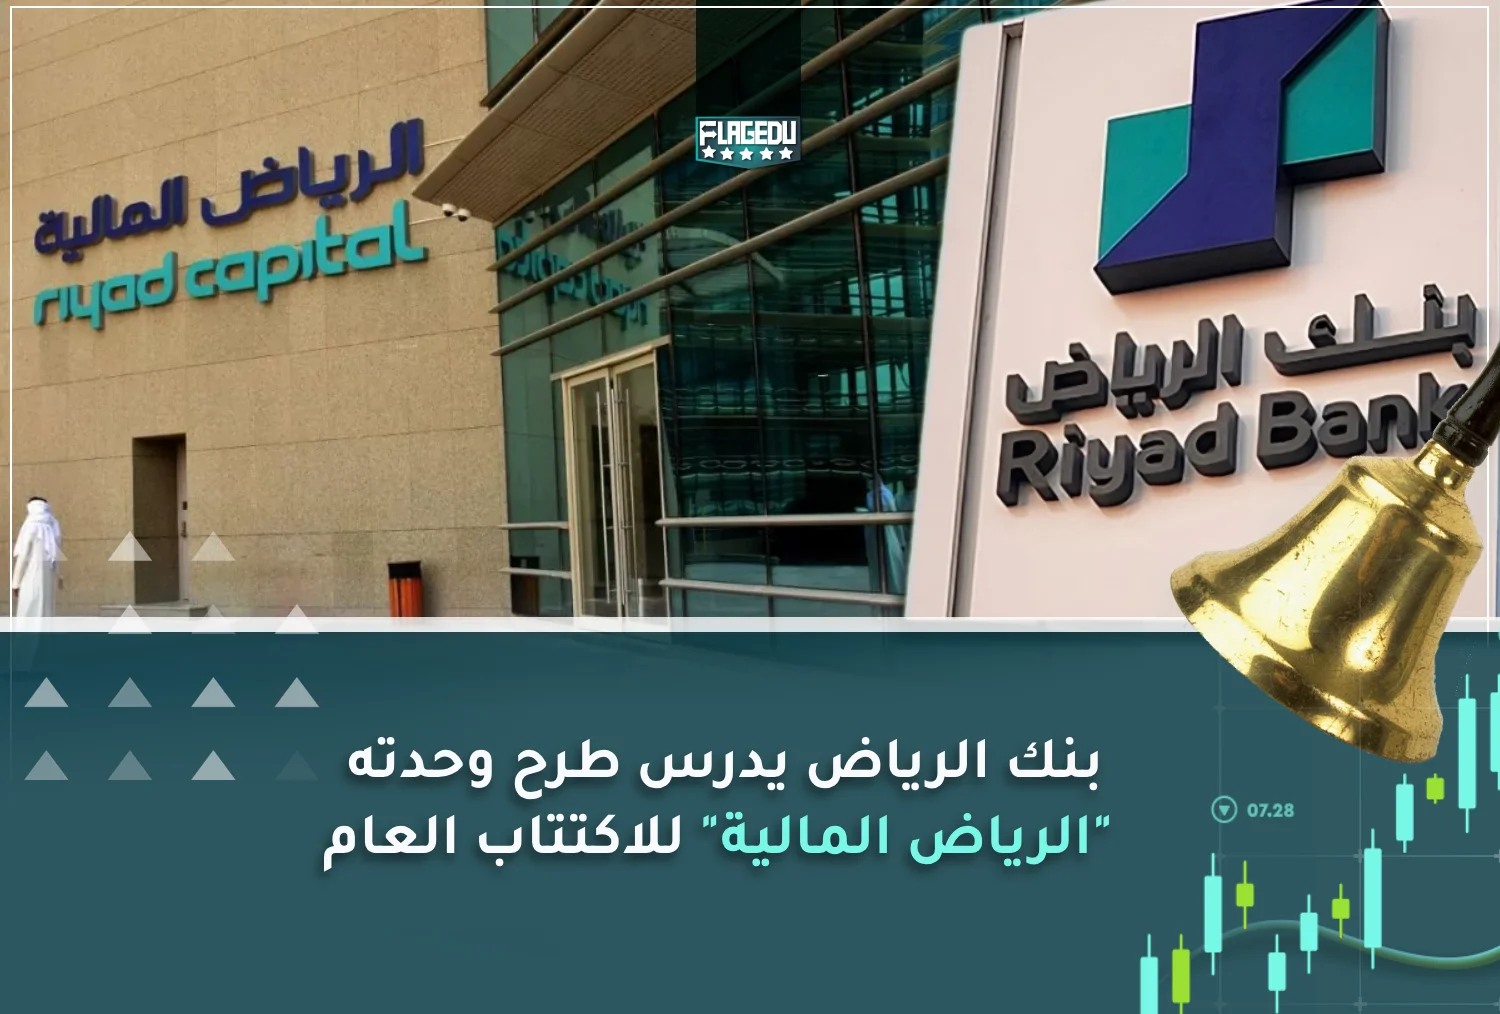 بنك الرياض يدرس طرح وحدته الرياض المالية للاكتتاب العام